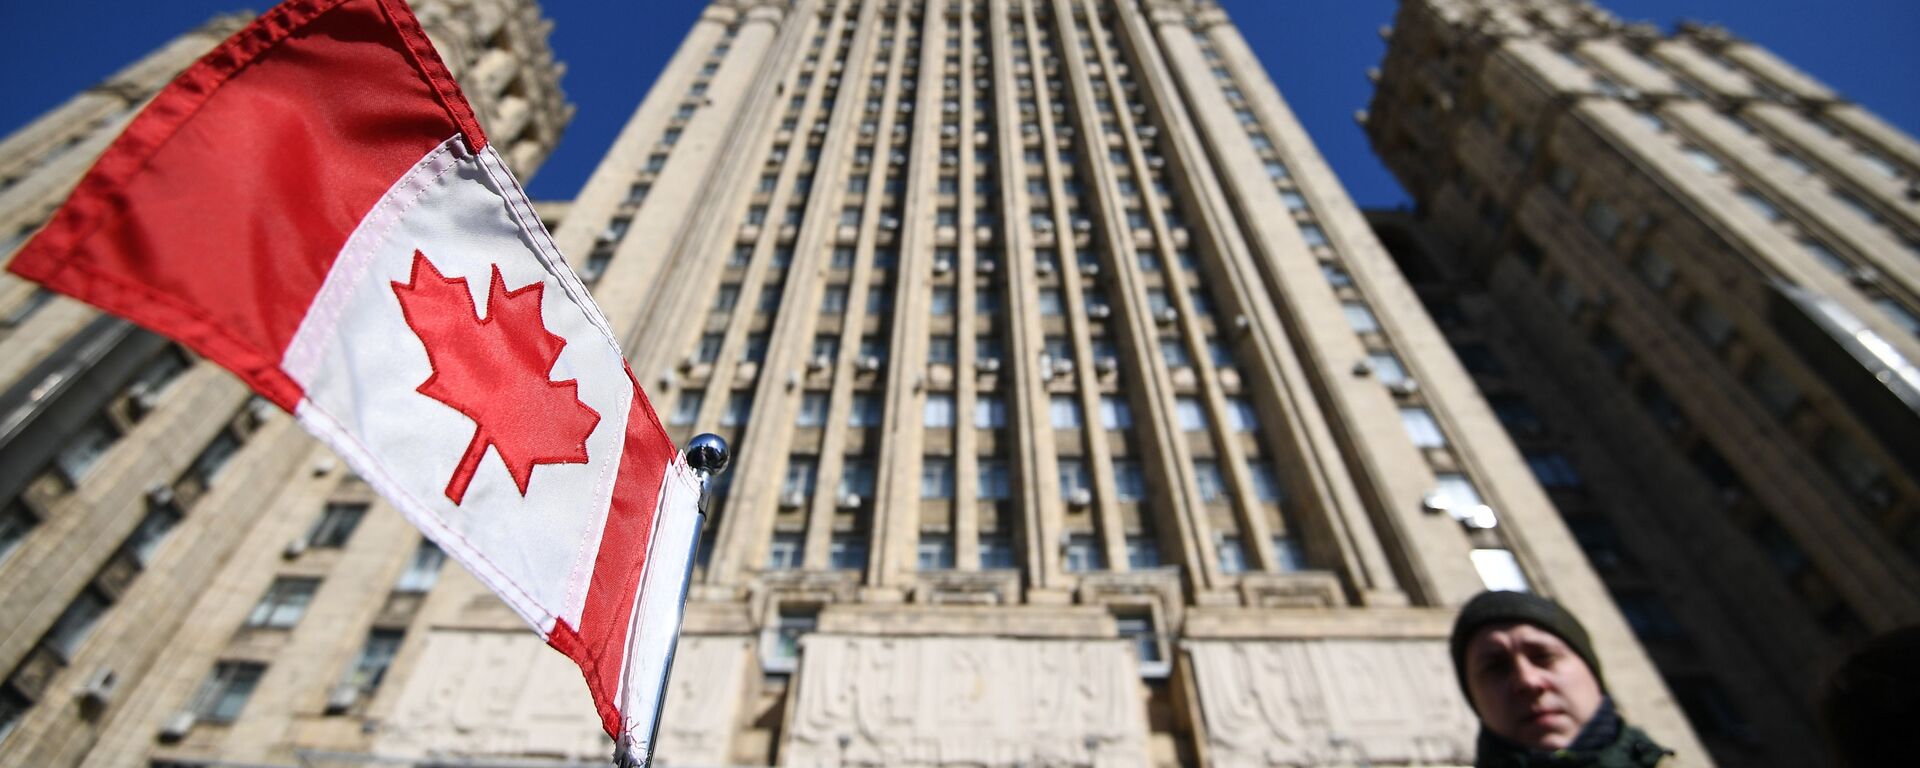 Bandeira nacional do Canadá no carro da embaixada canadense em frente ao prédio do Ministério das Relações Exteriores da Federação da Rússia, para onde foram convocados embaixadores de países que expulsaram diplomatas russos - Sputnik Brasil, 1920, 24.03.2021